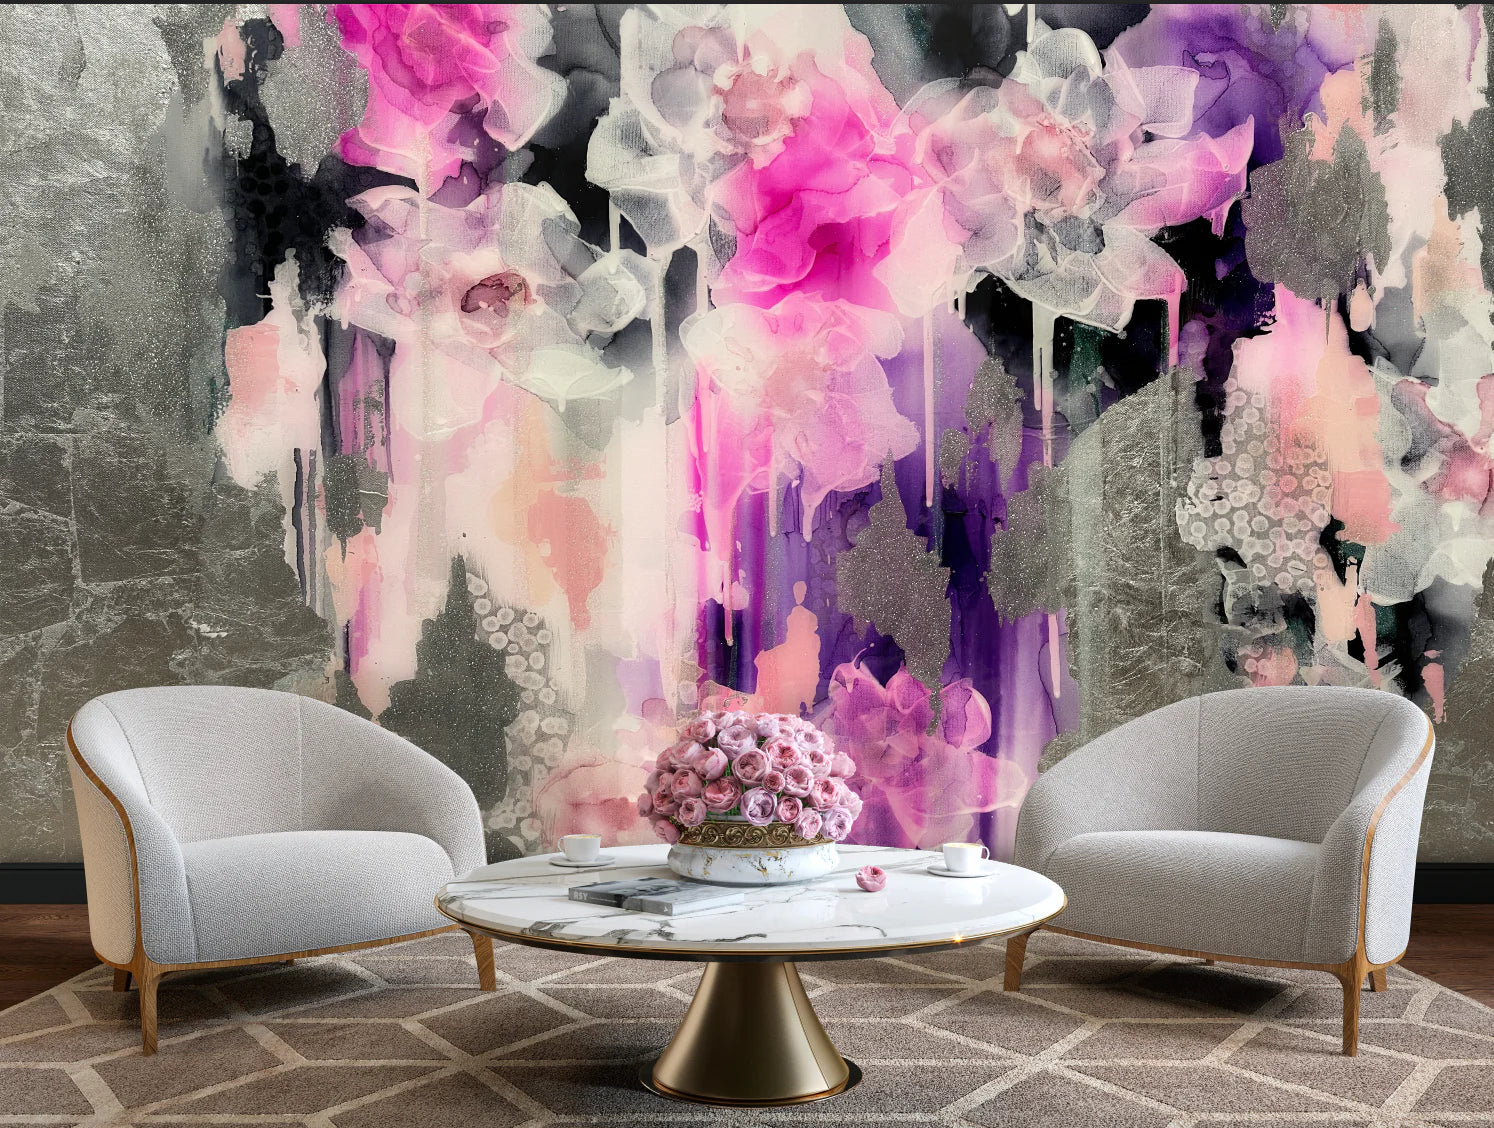 purple and silver wallpaper designs